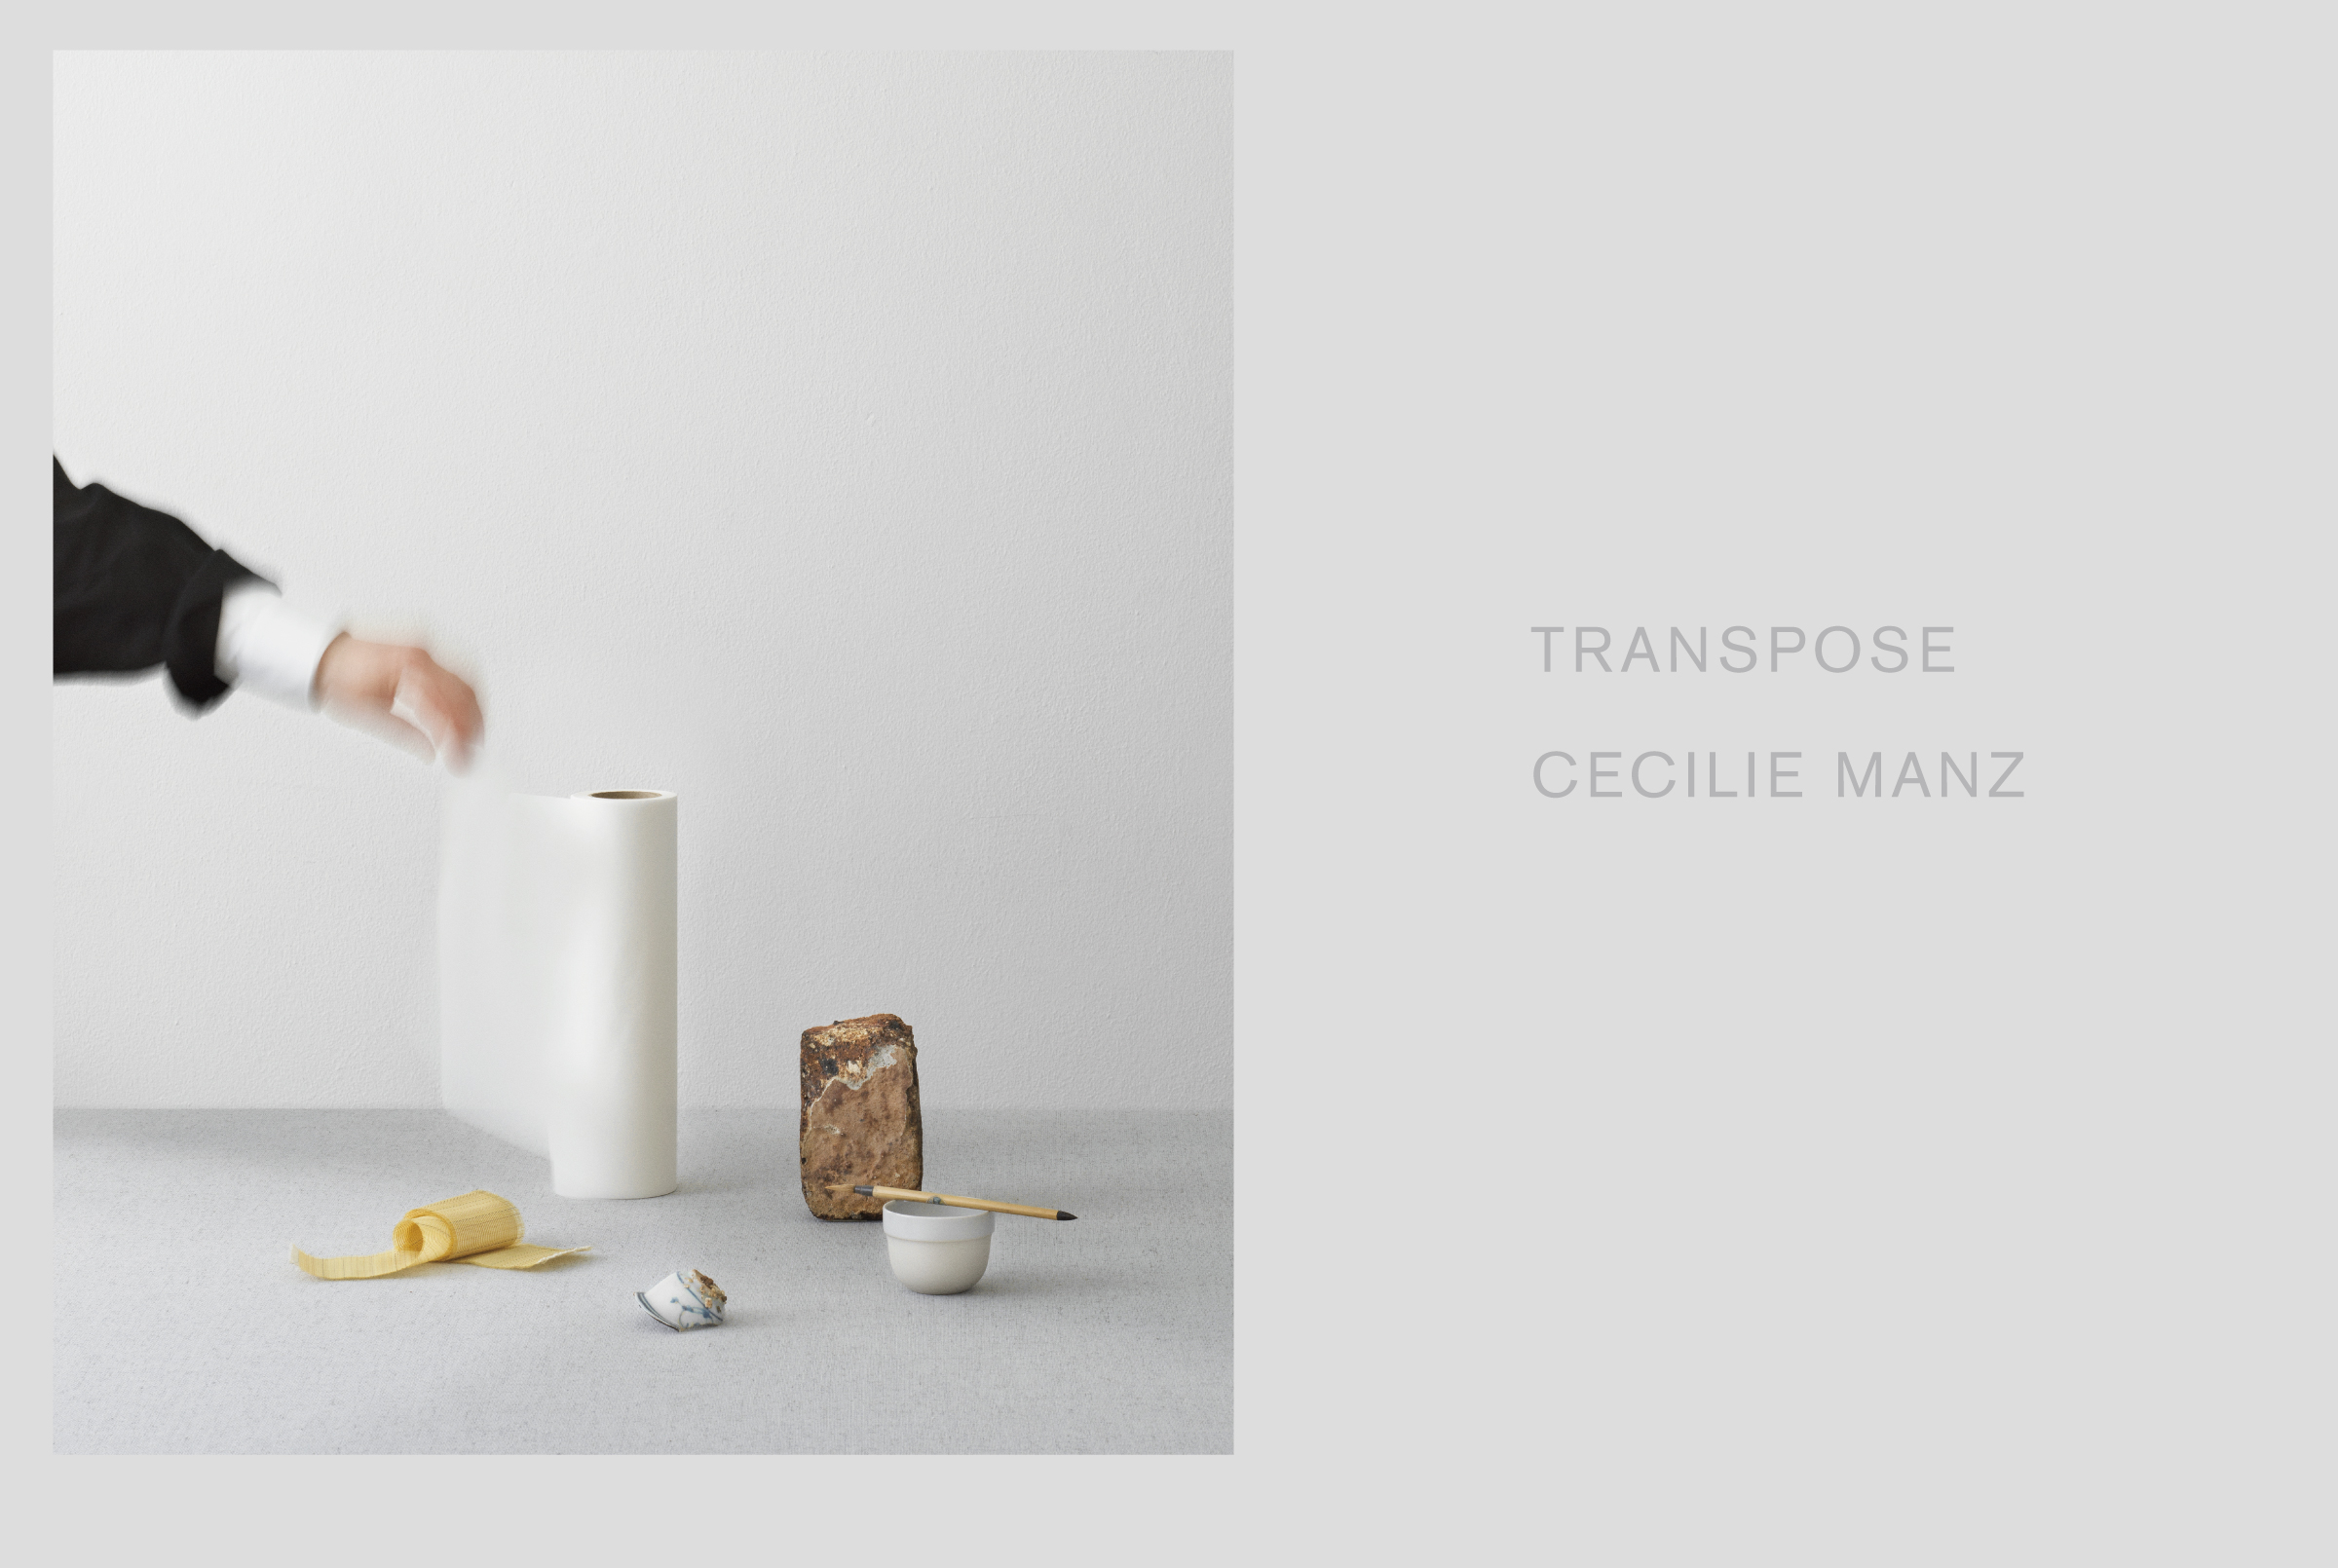 デザインの裏に潜む感覚と思想Cecilie Manz 展〈TRANSPOSE　発想のめぐり〉Thoughts and Sensations Underlying DesignExhibition: Cecilie Manz Solo Show〈Transpose: Turning Ideas Around 〉